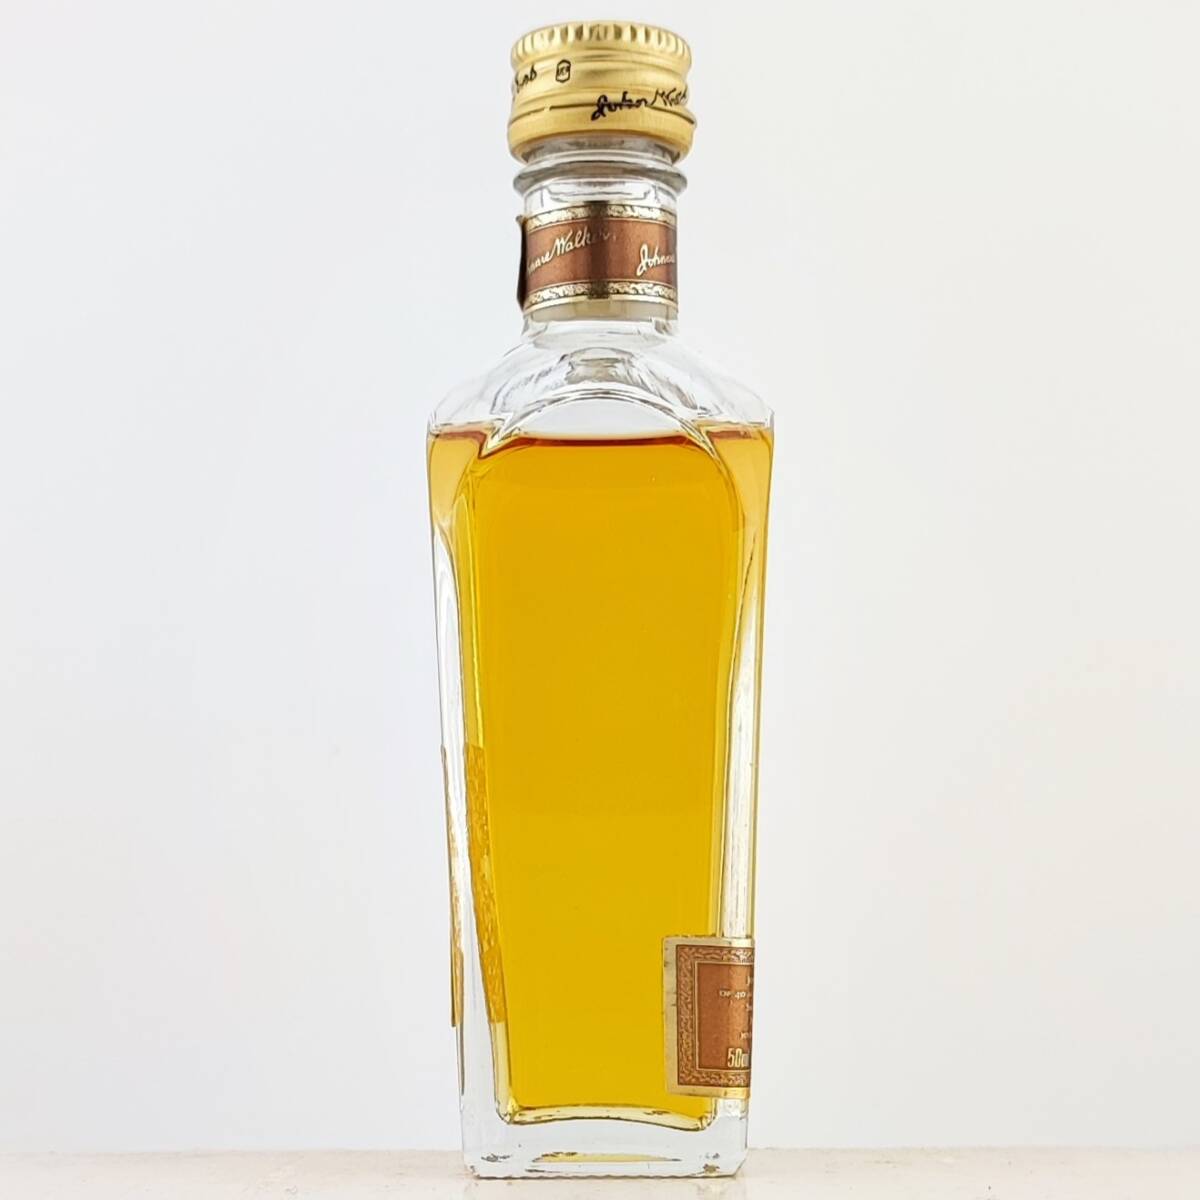 【全国送料無料】Johnnie Walker 1820 Special Blend Exceptionally Smooth Old Scotch Whisky 40度 50ml【ジョニーウォーカー】の画像5